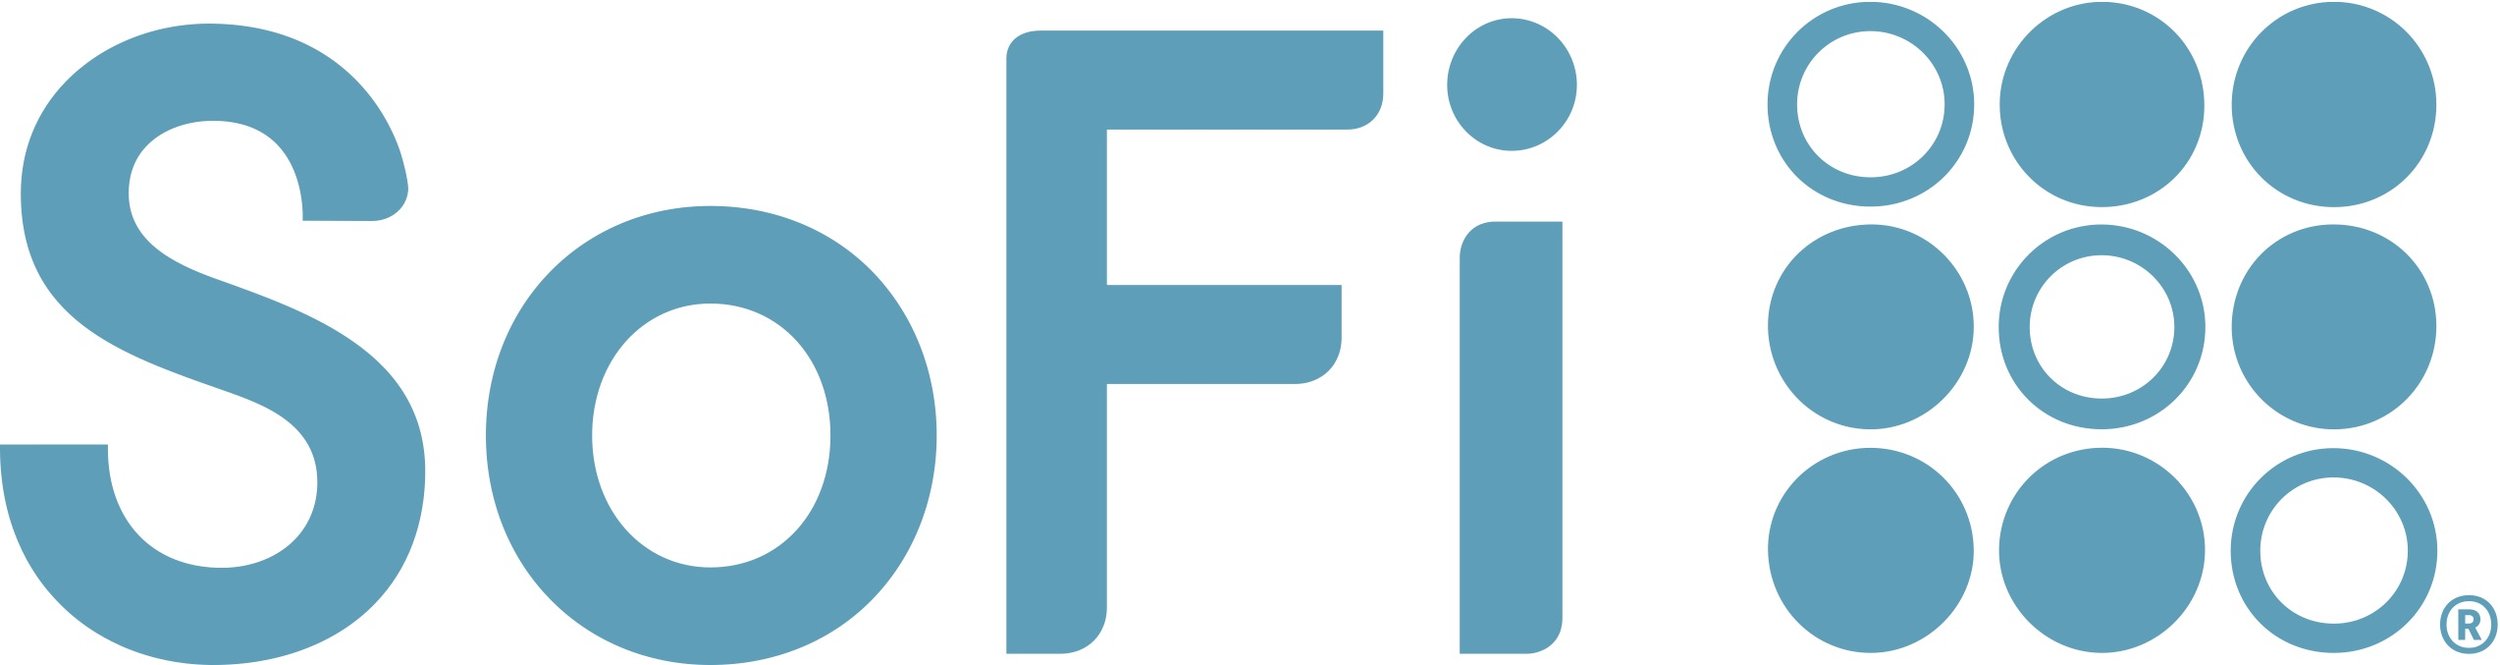 sofi_logo.jpg